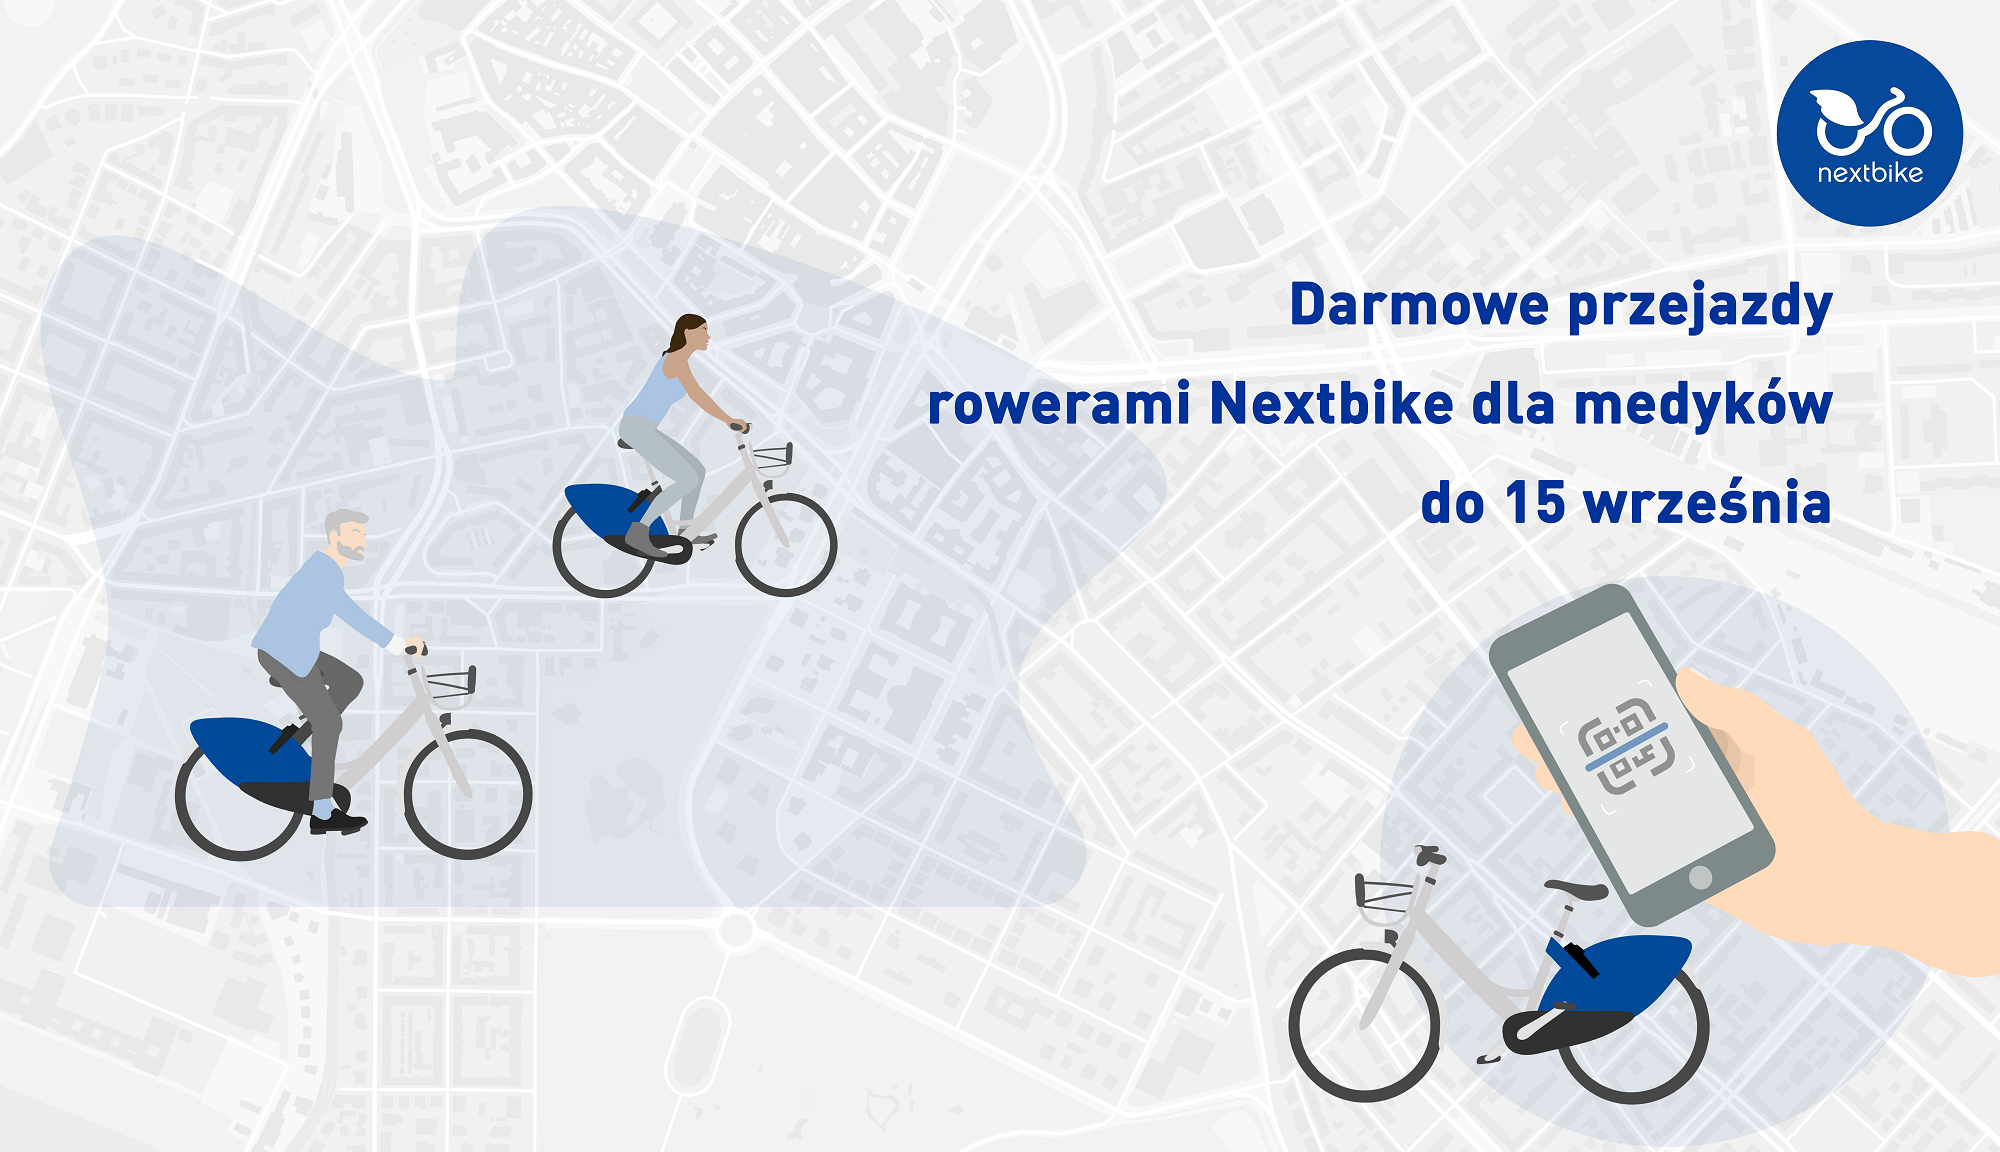 (Polski) Darmowe przejazdy rowerami Nextbike dla medyków do połowy września!